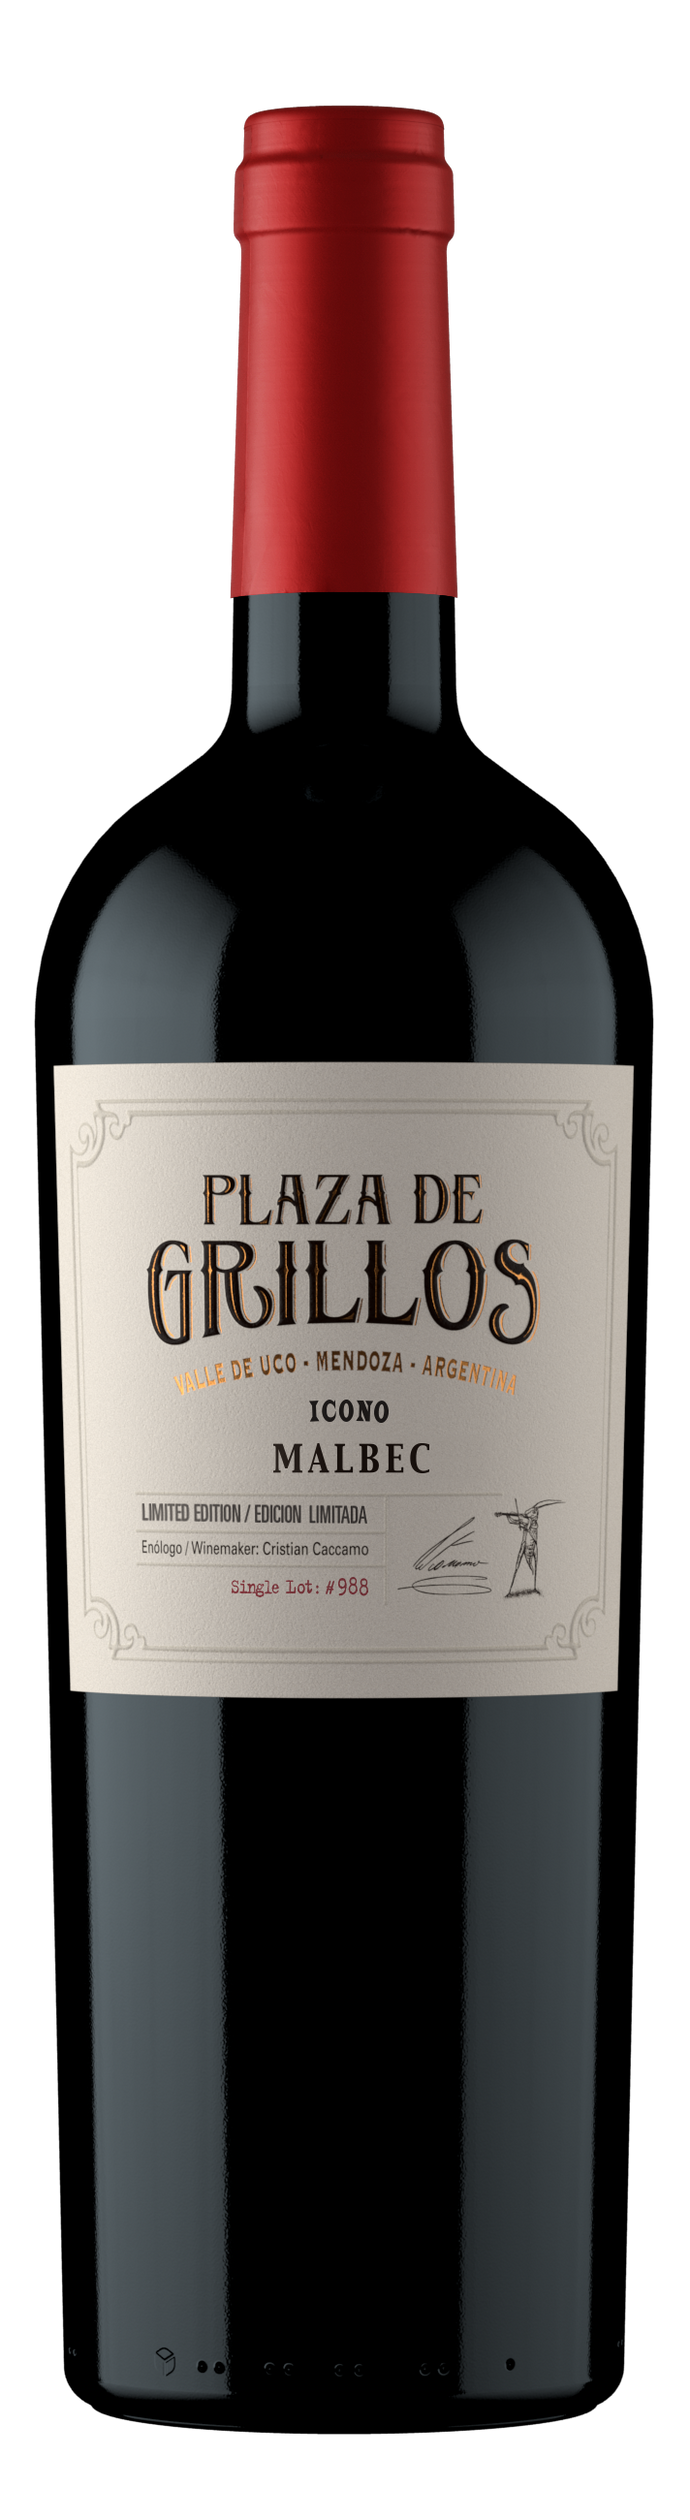 Plaza de Grillos - Icon - 100% Malbec 2016